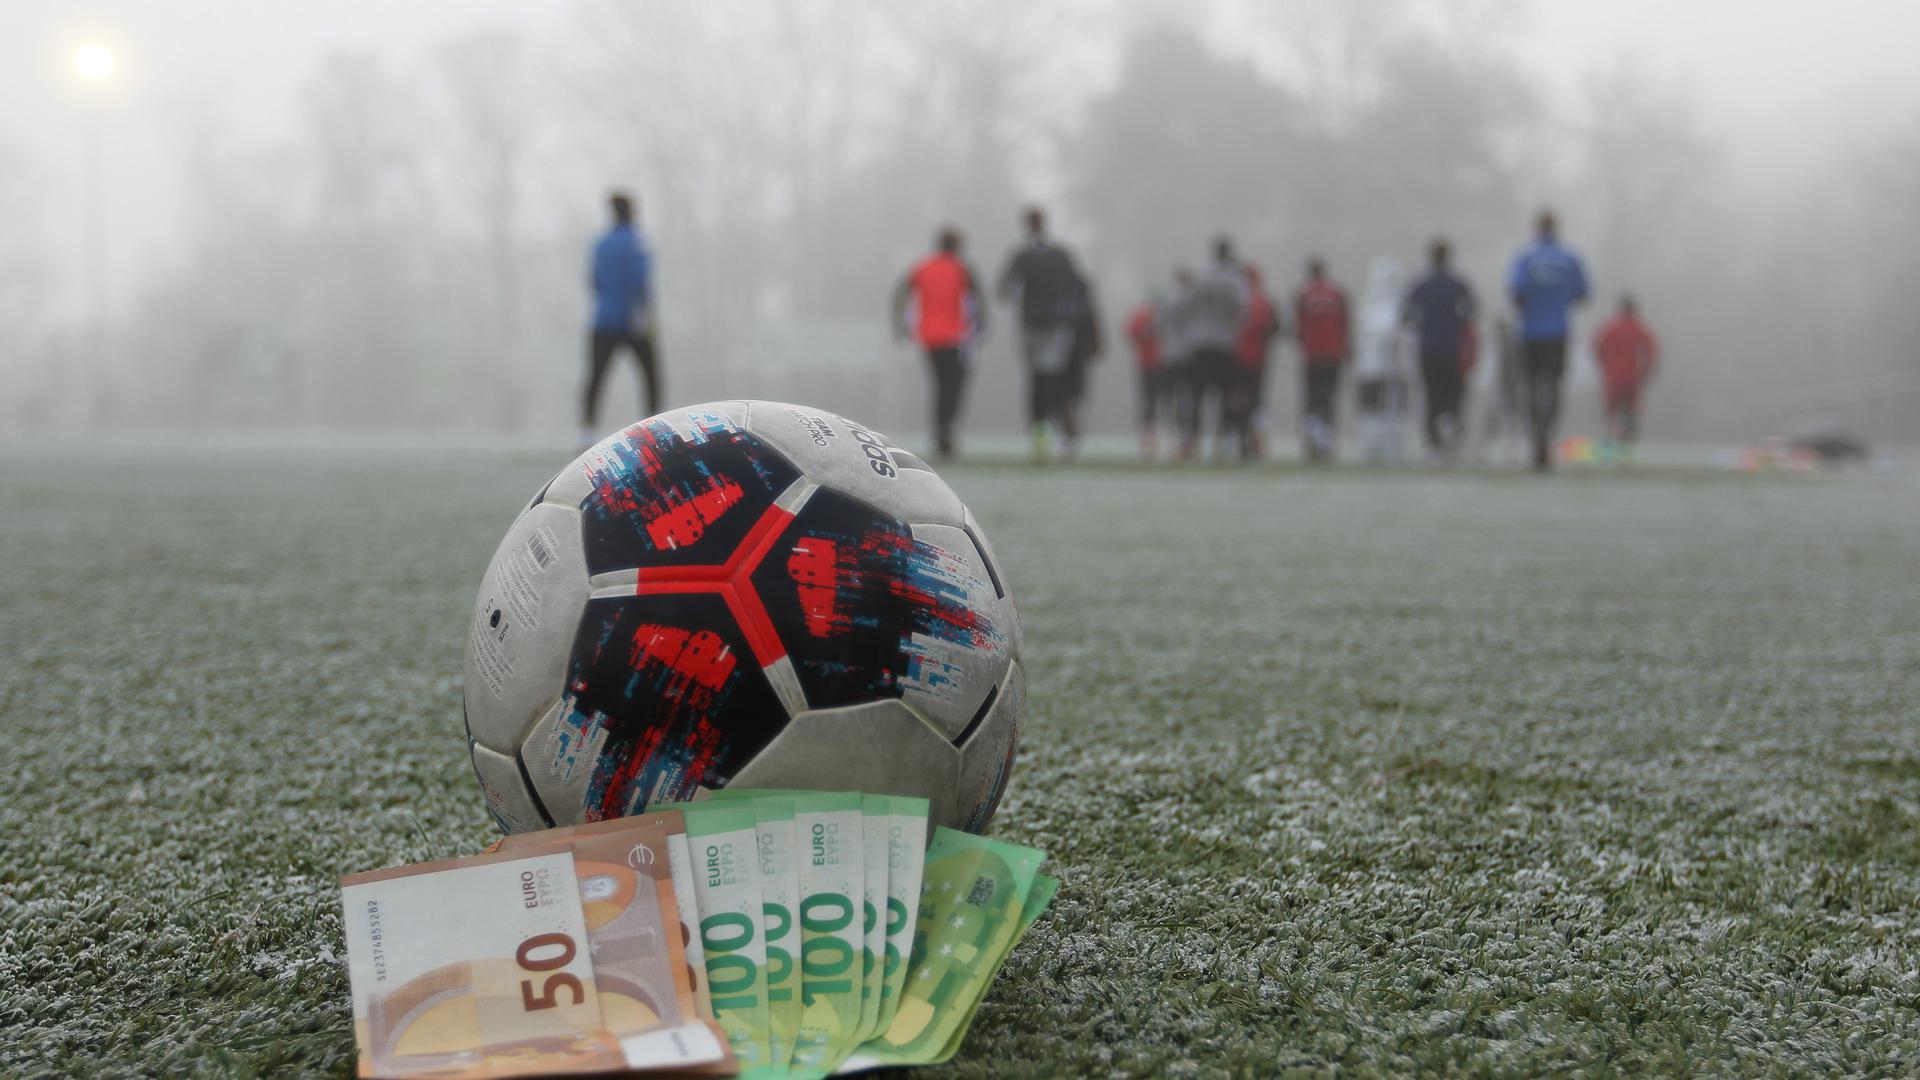 2018 mussten die Vereine an den SBFV Bußgelder und Strafen in Höhe von rund 70.000 Euro bezahlen.